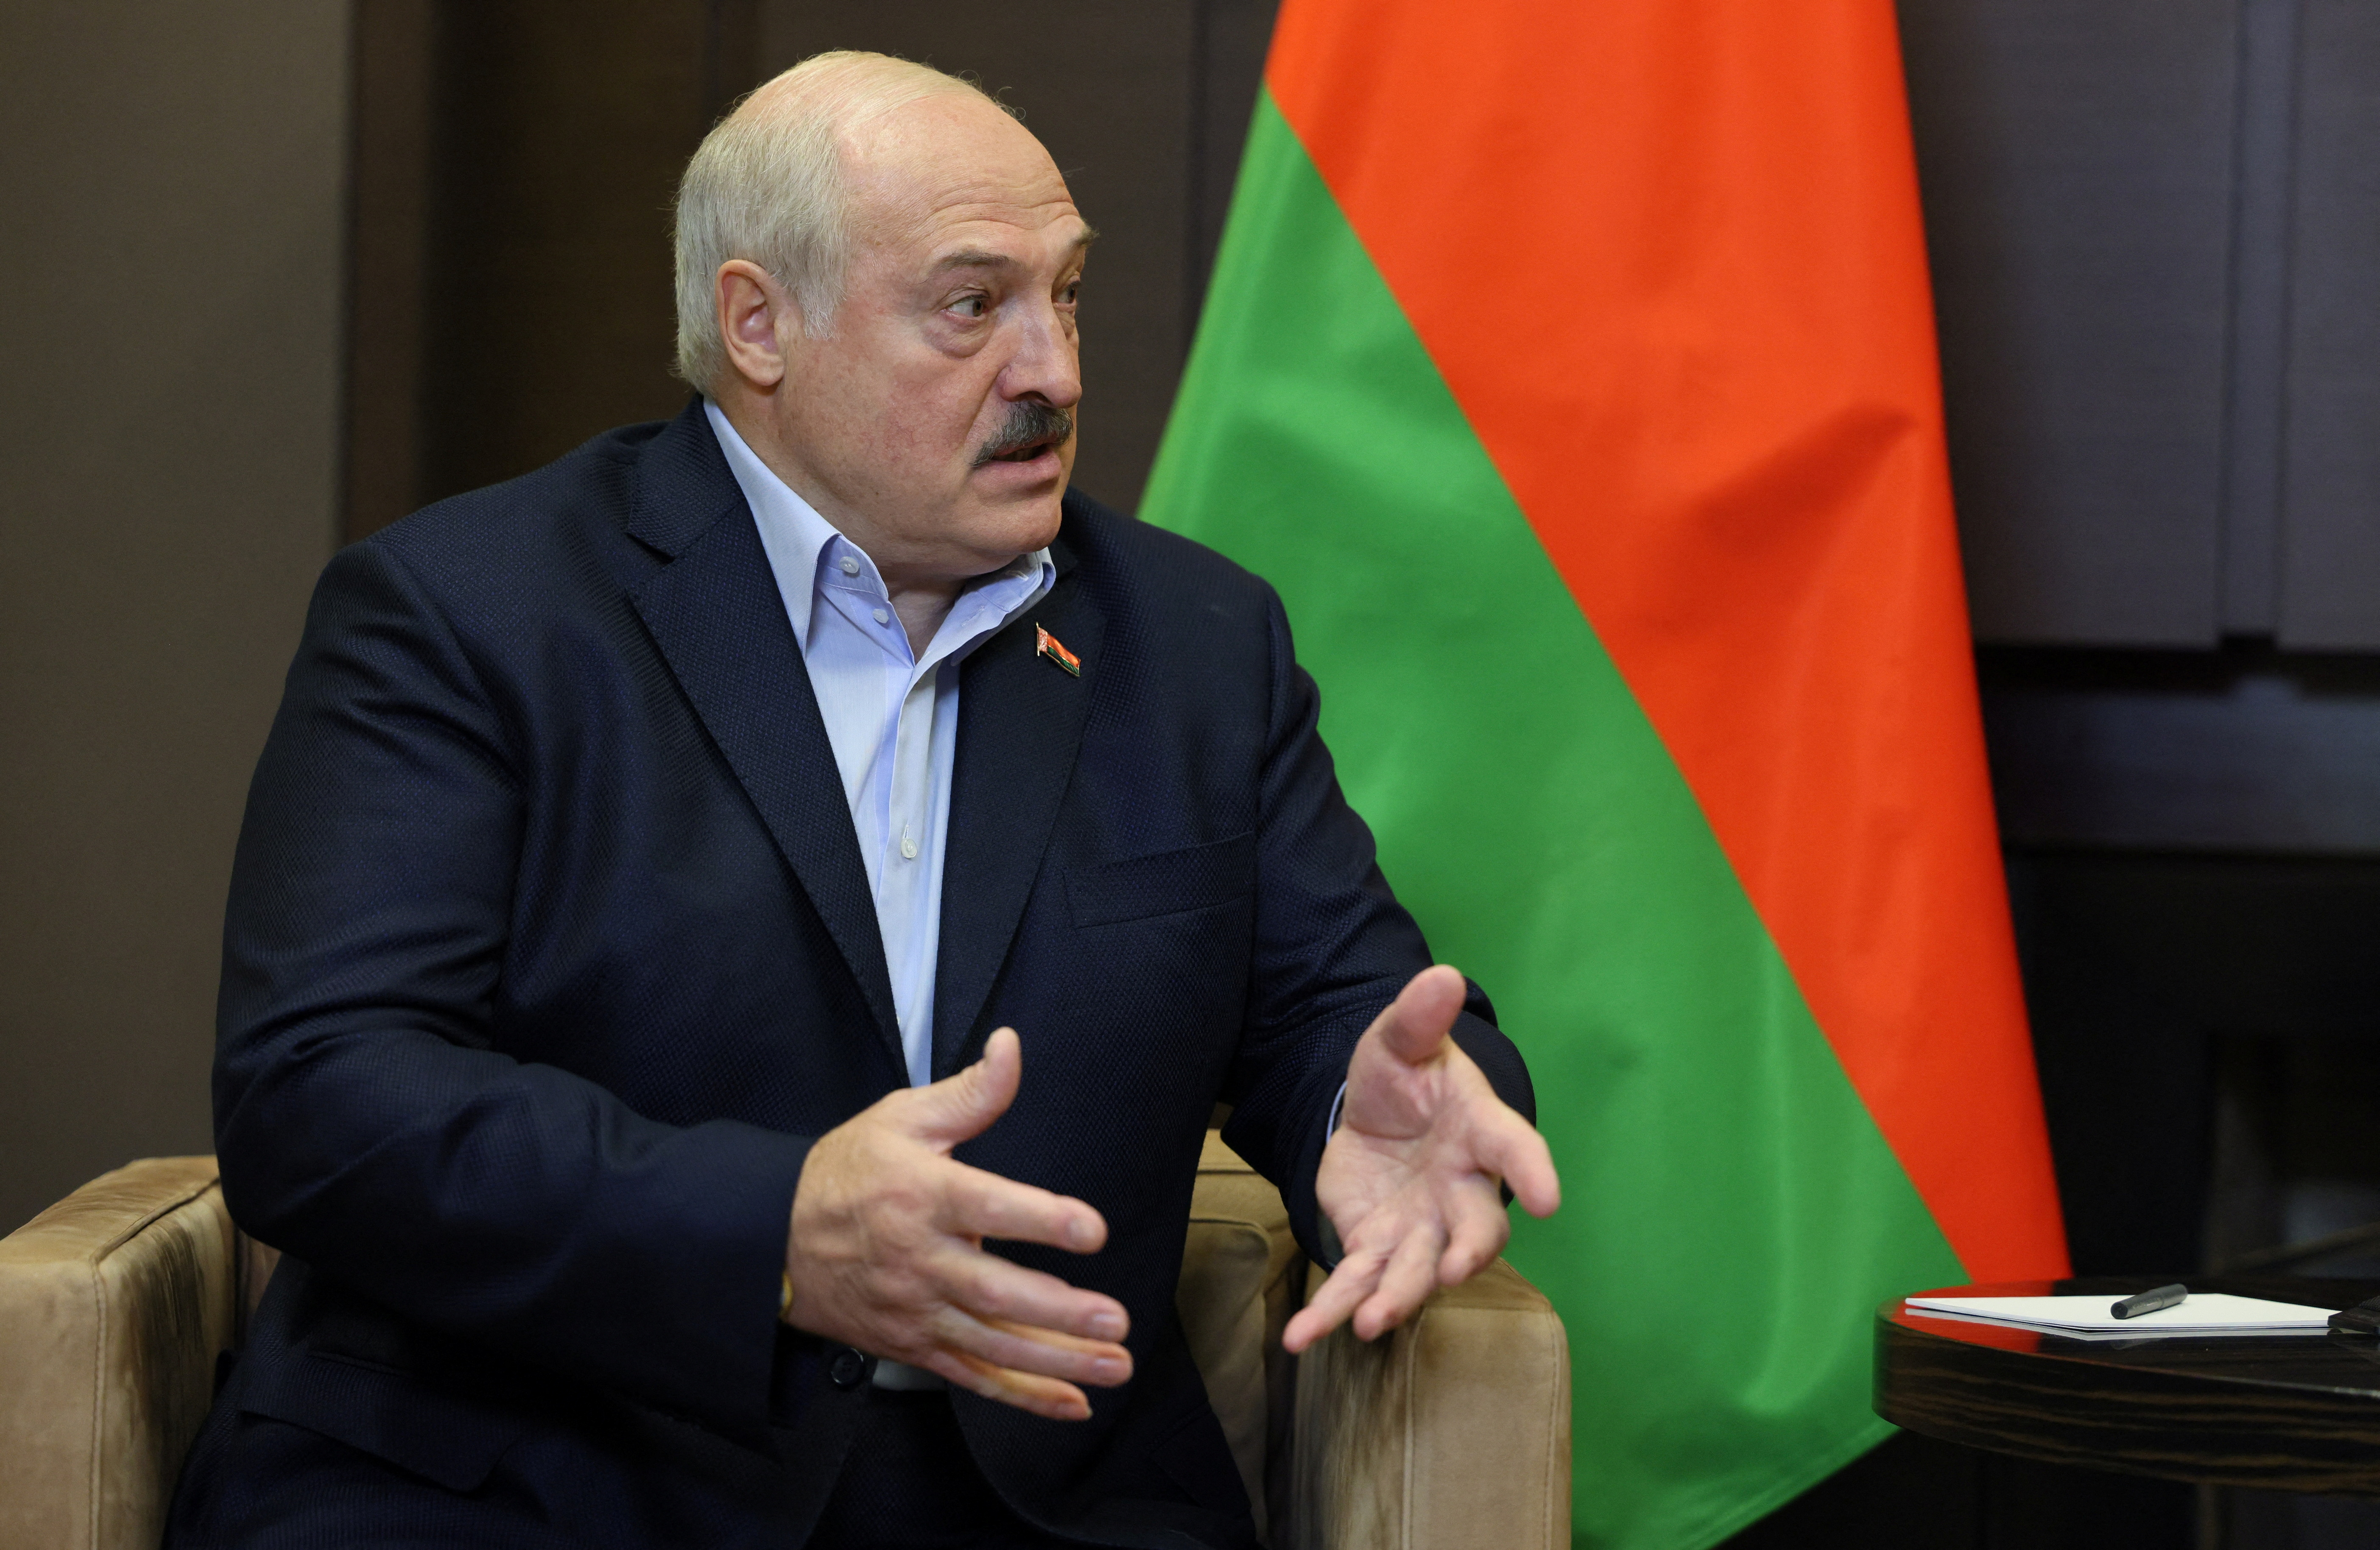 El presidente bielorruso, Alexander Lukashenko, asiste a una reunión con el presidente ruso Vladimir Putin en Sochi, Rusia, el 26 de septiembre de 2022. Sputnik/Gavriil Grigorov/Pool vía REUTERS